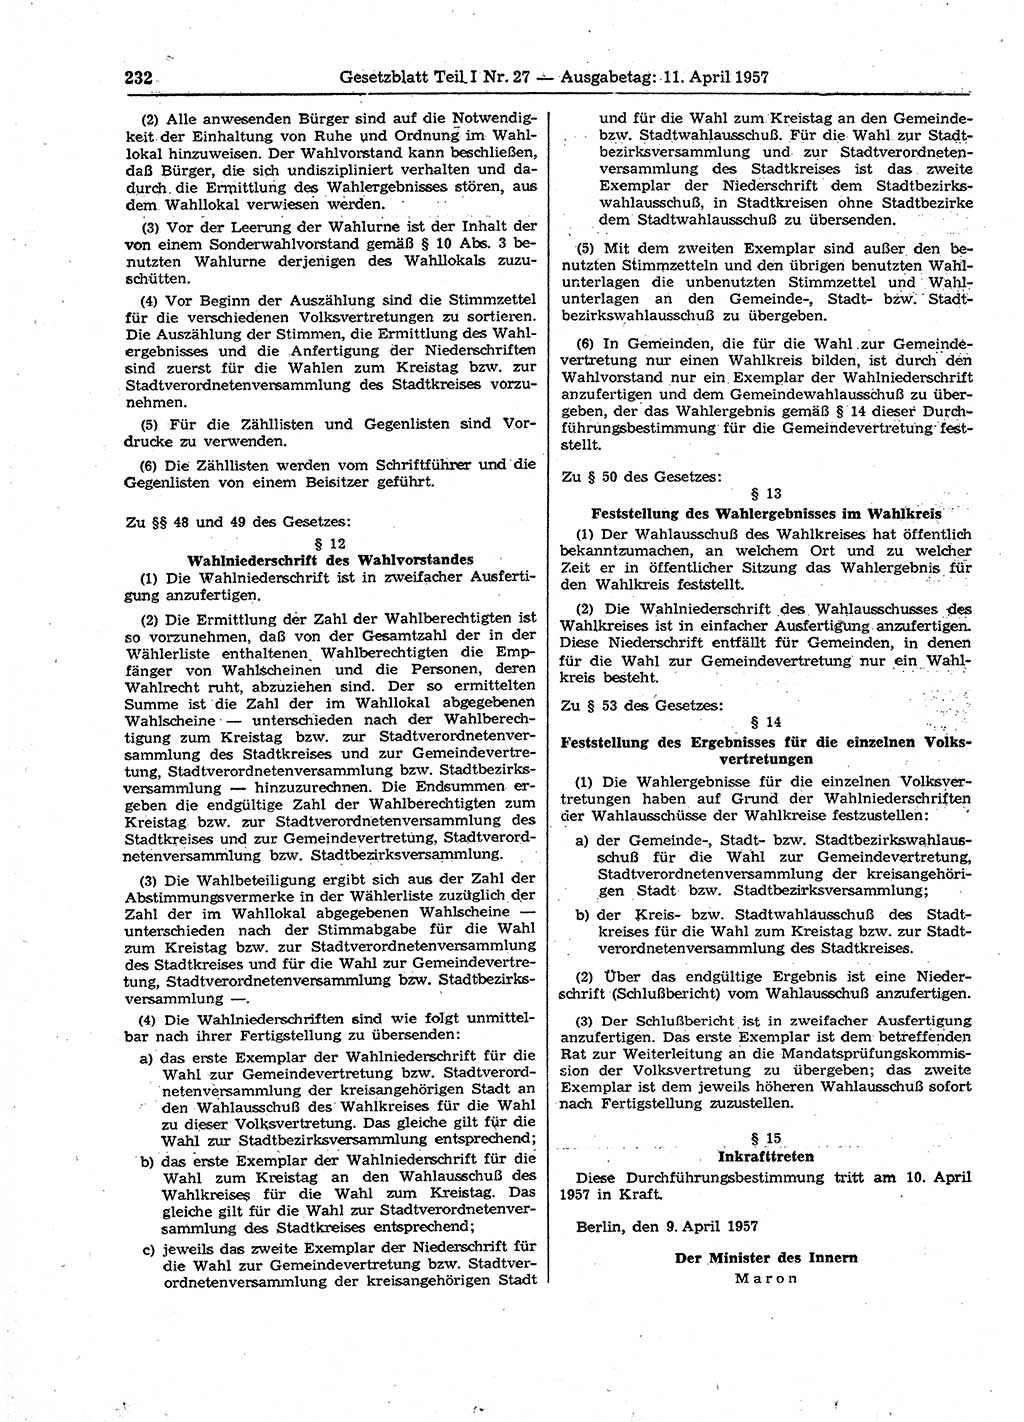 Gesetzblatt (GBl.) der Deutschen Demokratischen Republik (DDR) Teil Ⅰ 1957, Seite 232 (GBl. DDR Ⅰ 1957, S. 232)